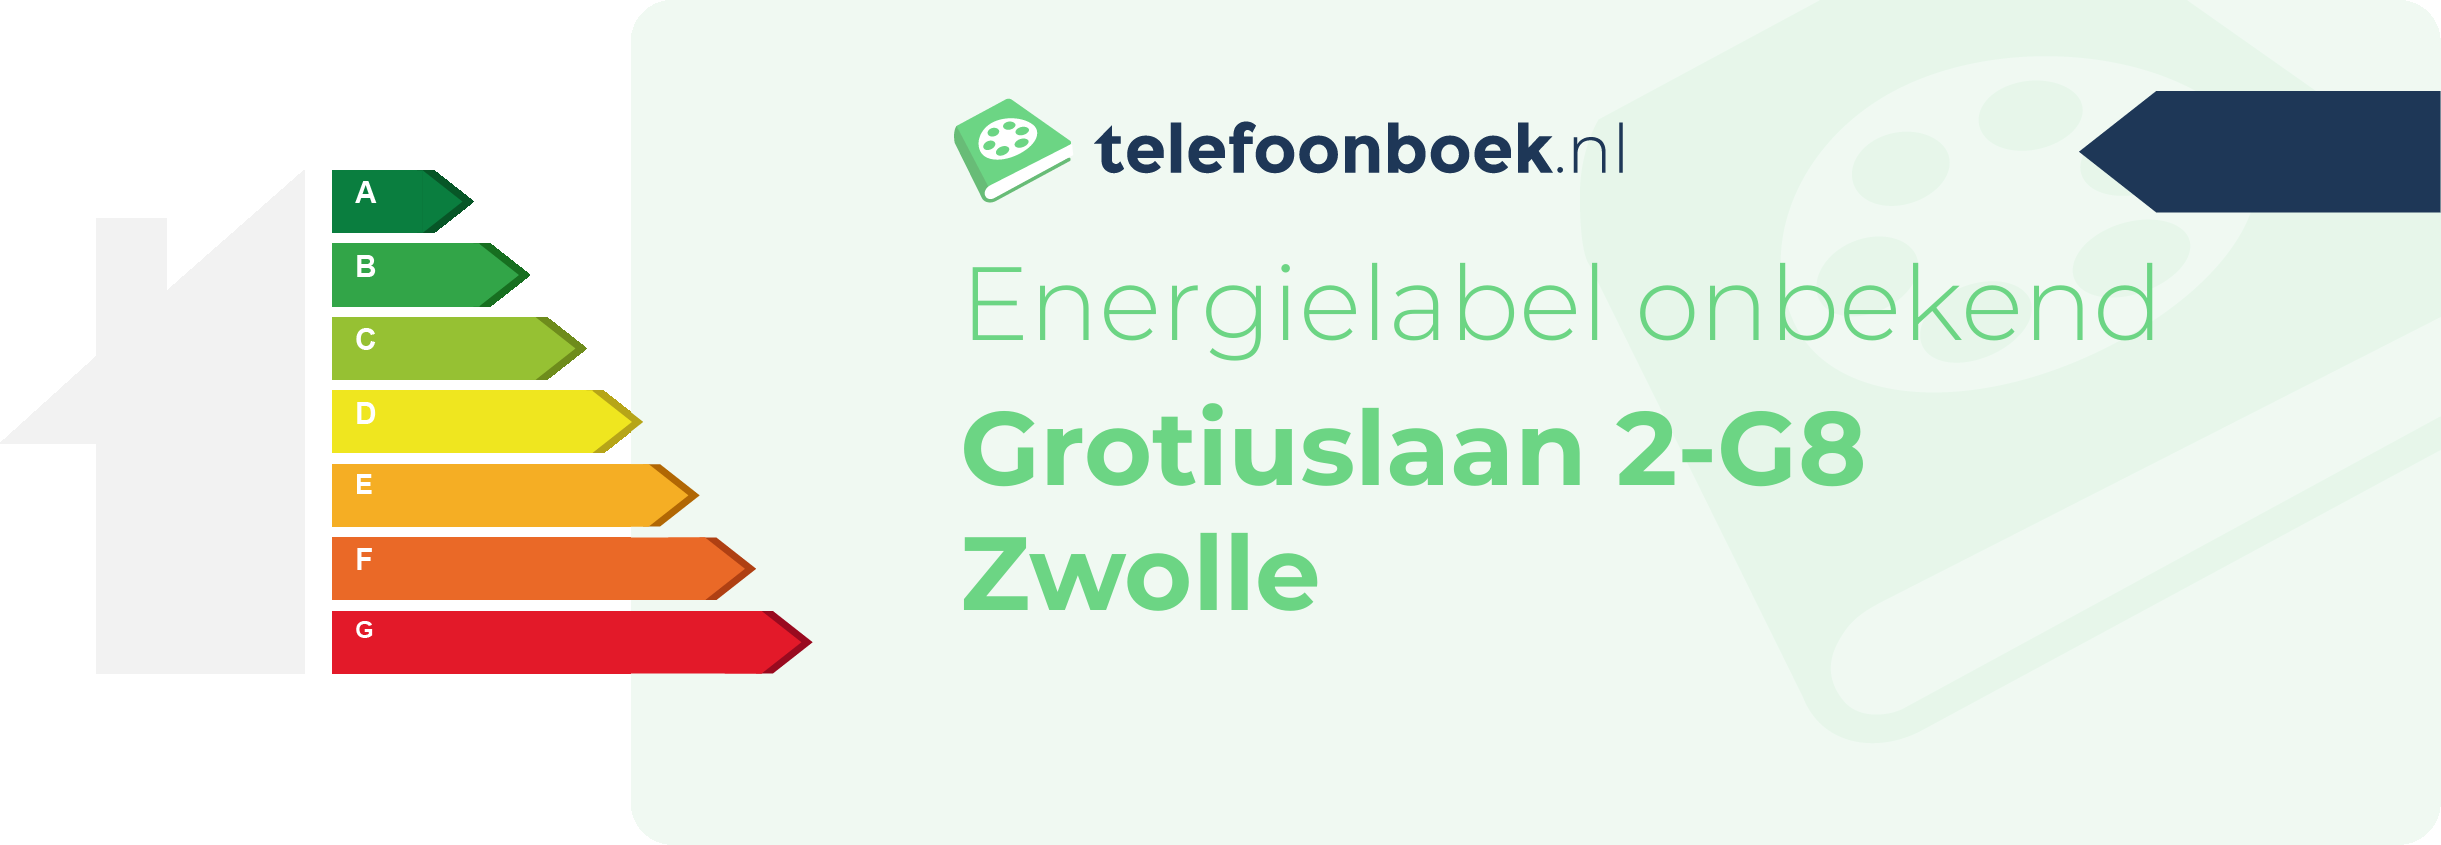 Energielabel Grotiuslaan 2-G8 Zwolle